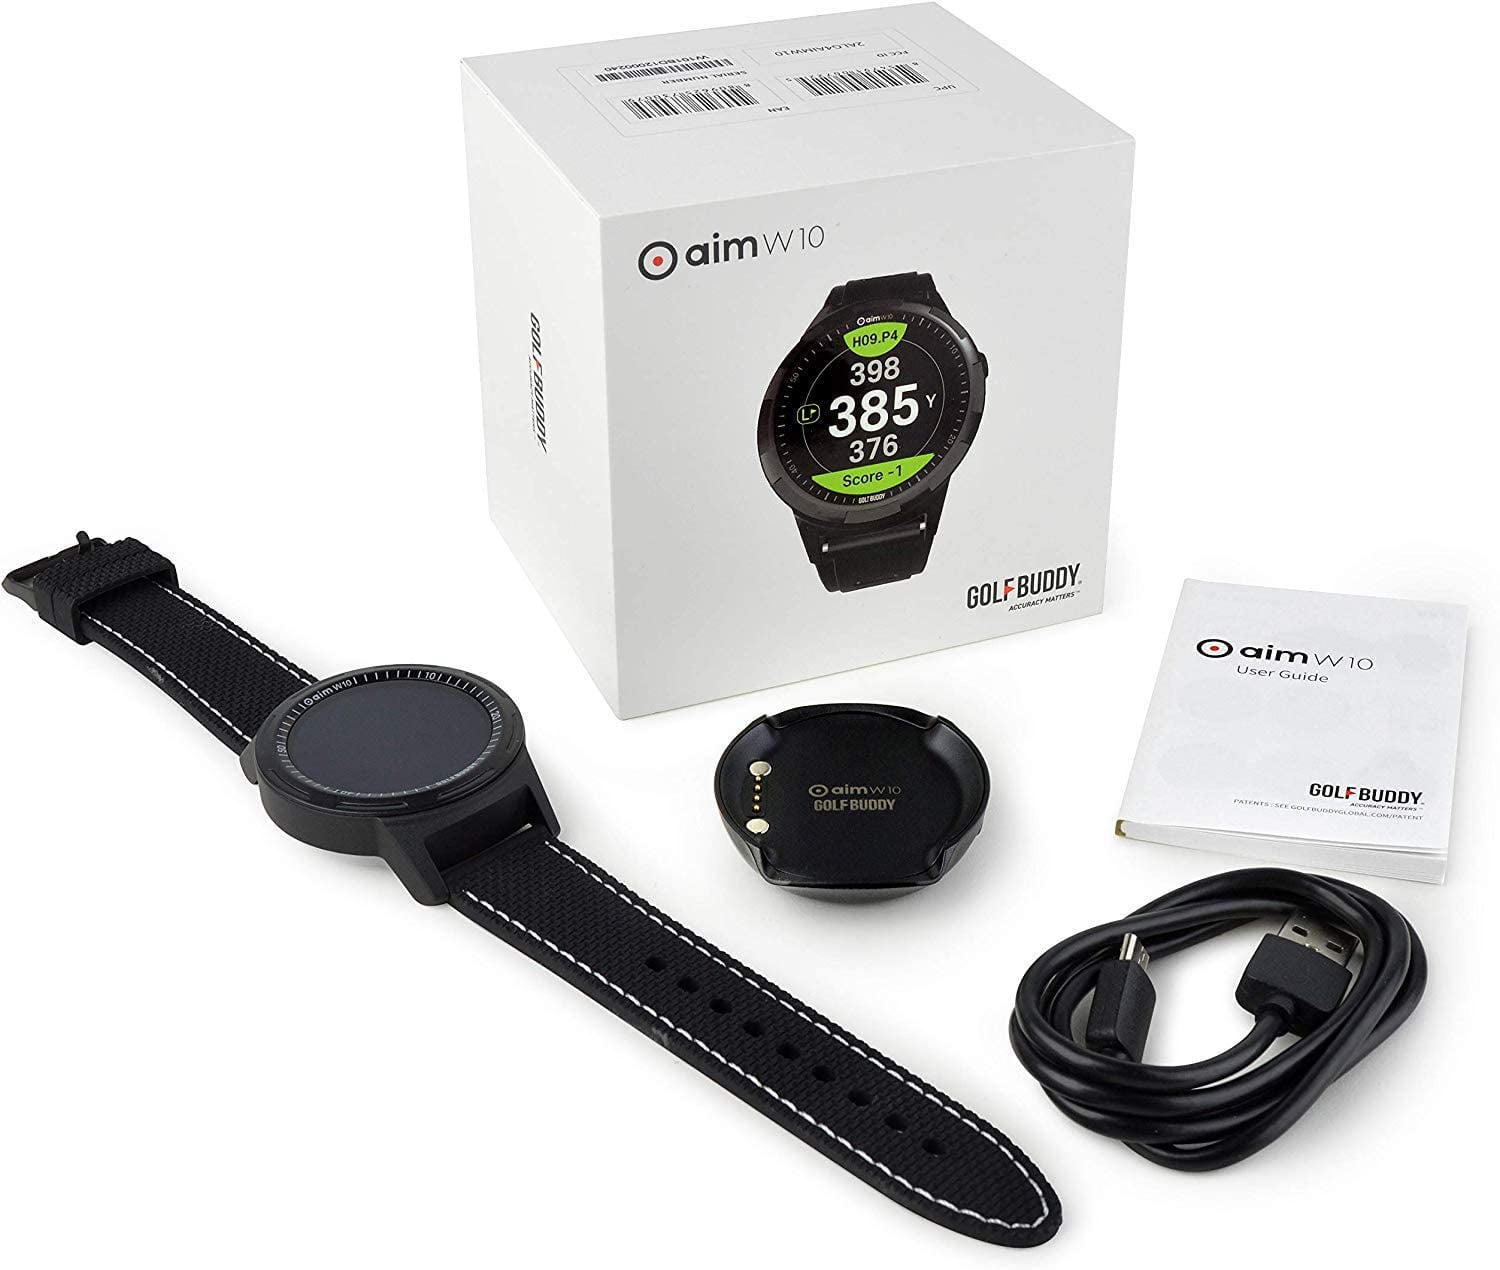 GolfBuddy Aim W10 GPS Watch aim W10 Golf GPS Watch, Black, Medium